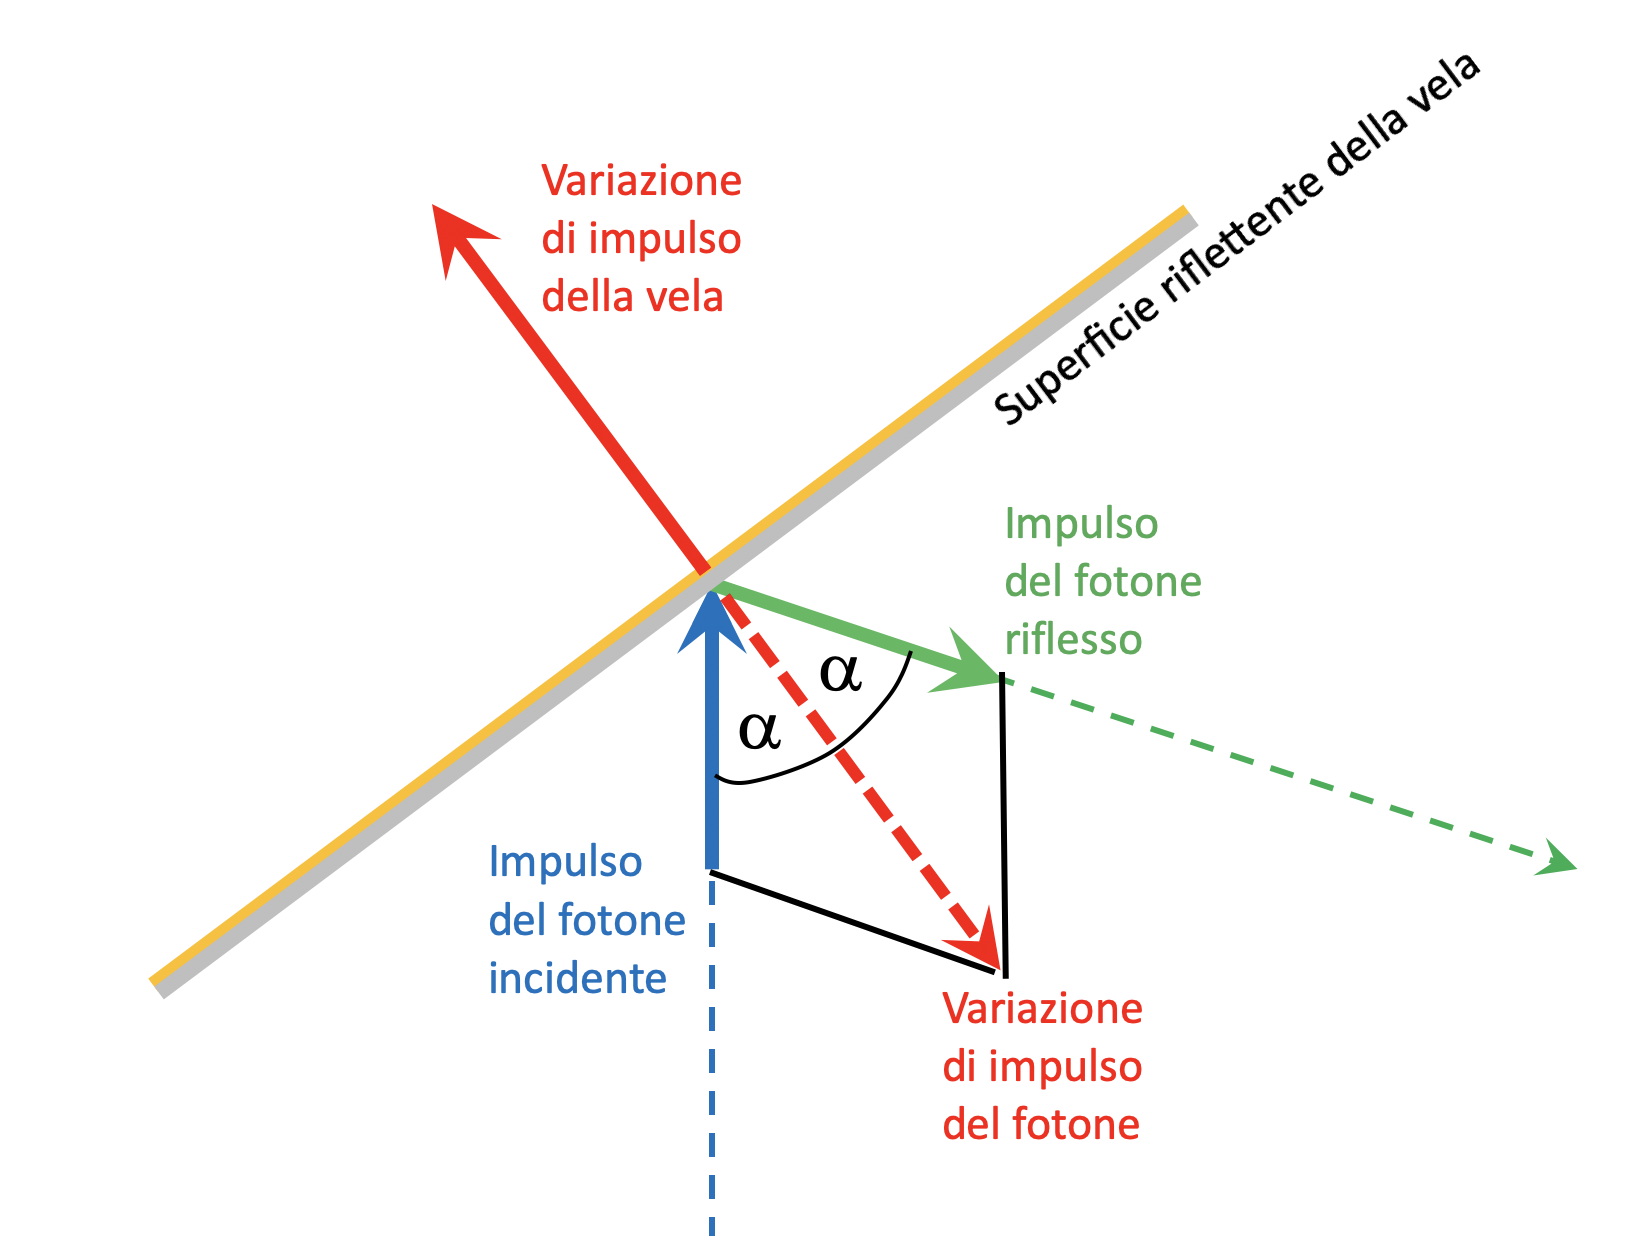 Figura 2: la riflessione di un fotone causa la cessione della variazione del suo impulso alla vela, che pertanto si metterà in movimento in direzione opposta alla direzione della sorgente (crediti: D. Spiga).